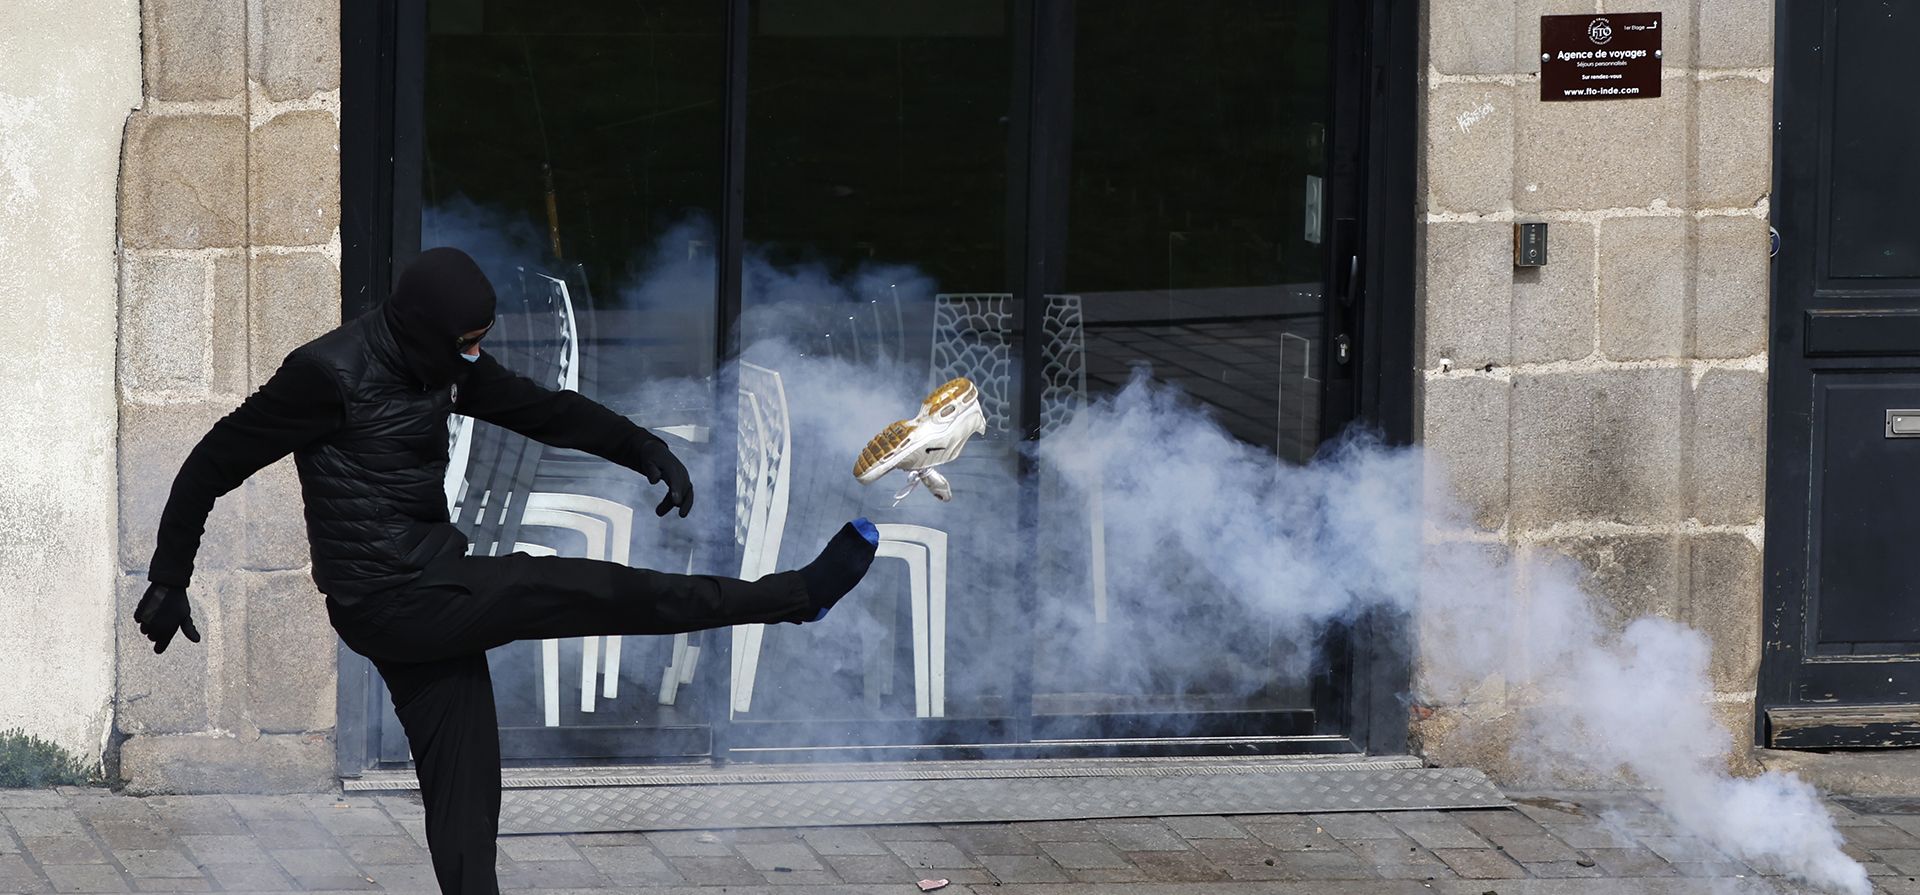 Un joven pierde su zapatilla al patear un bote de gas lacrimógeno durante una manifestación contra el plan del presidente Macron de retrasar la edad legal de jubilación de Francia de 62 a 64 años, en Nantes, oeste de Francia, el martes 28 de marzo de 2023. (Foto AP/Jeremias Gonzalez )